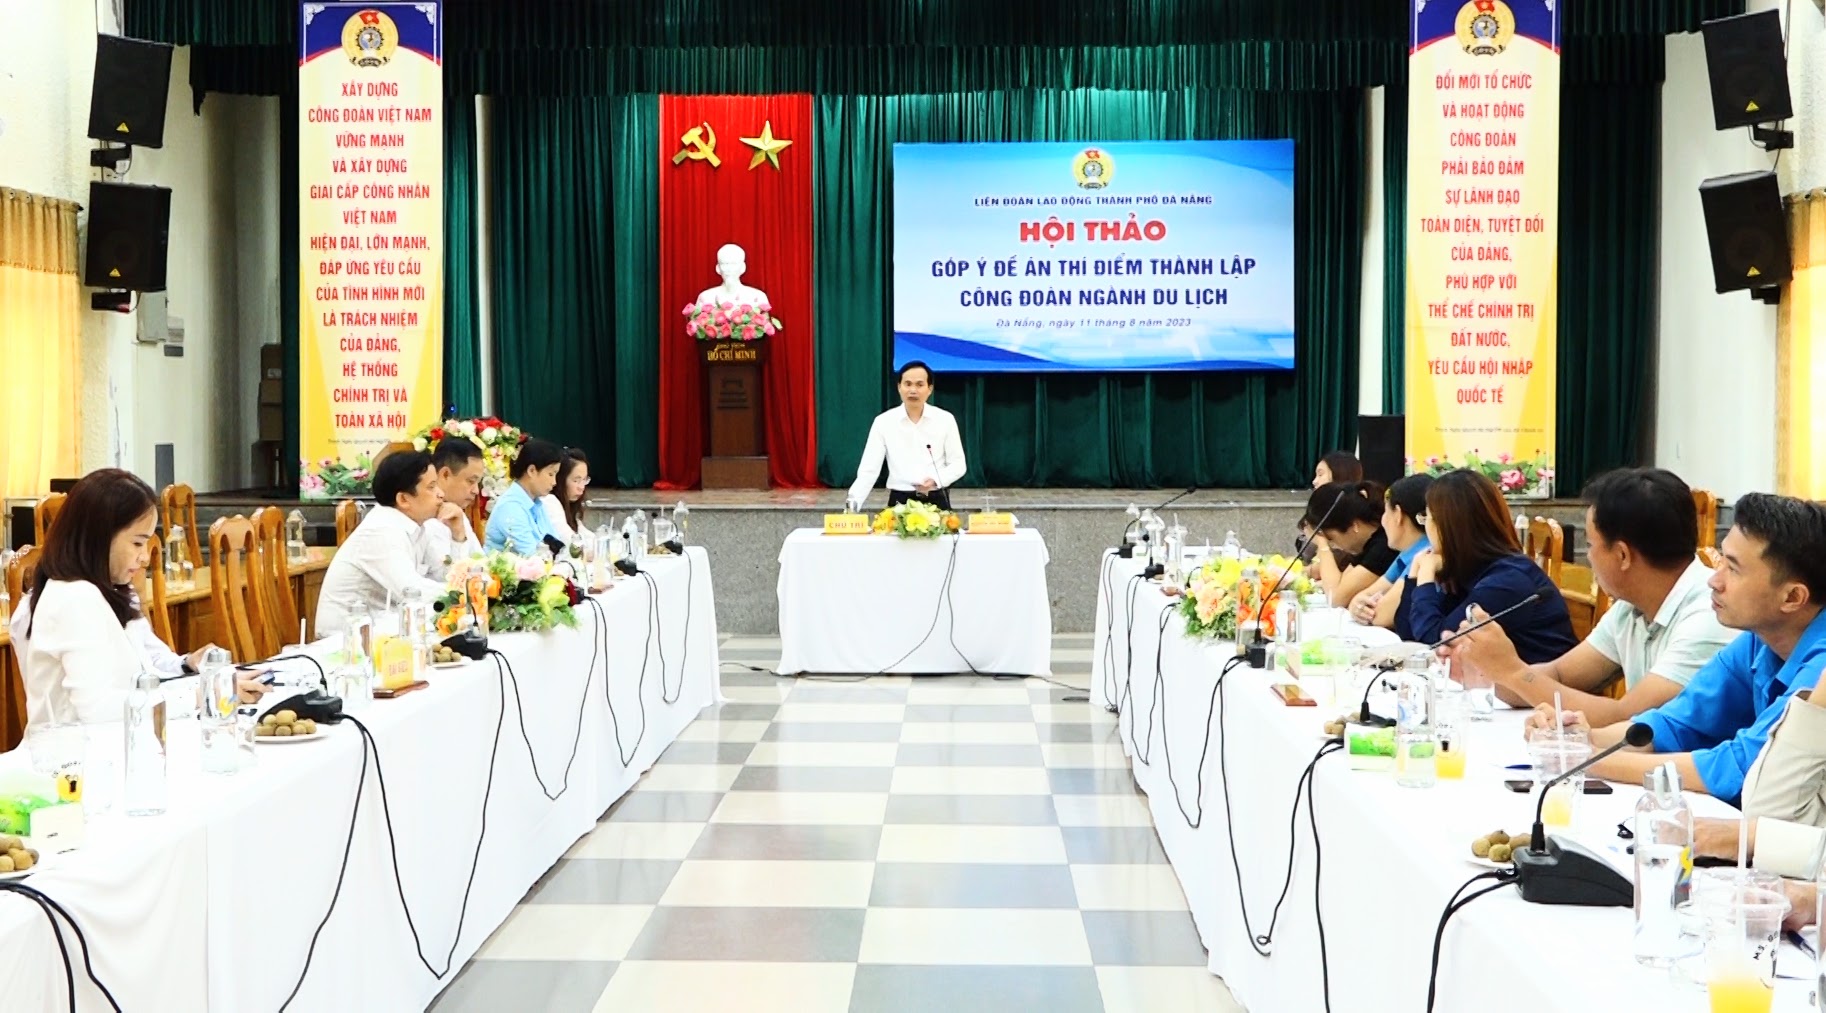 Đà Nẵng góp ý dự thảo Đề án thành lập Công đoàn ngành Du lịch